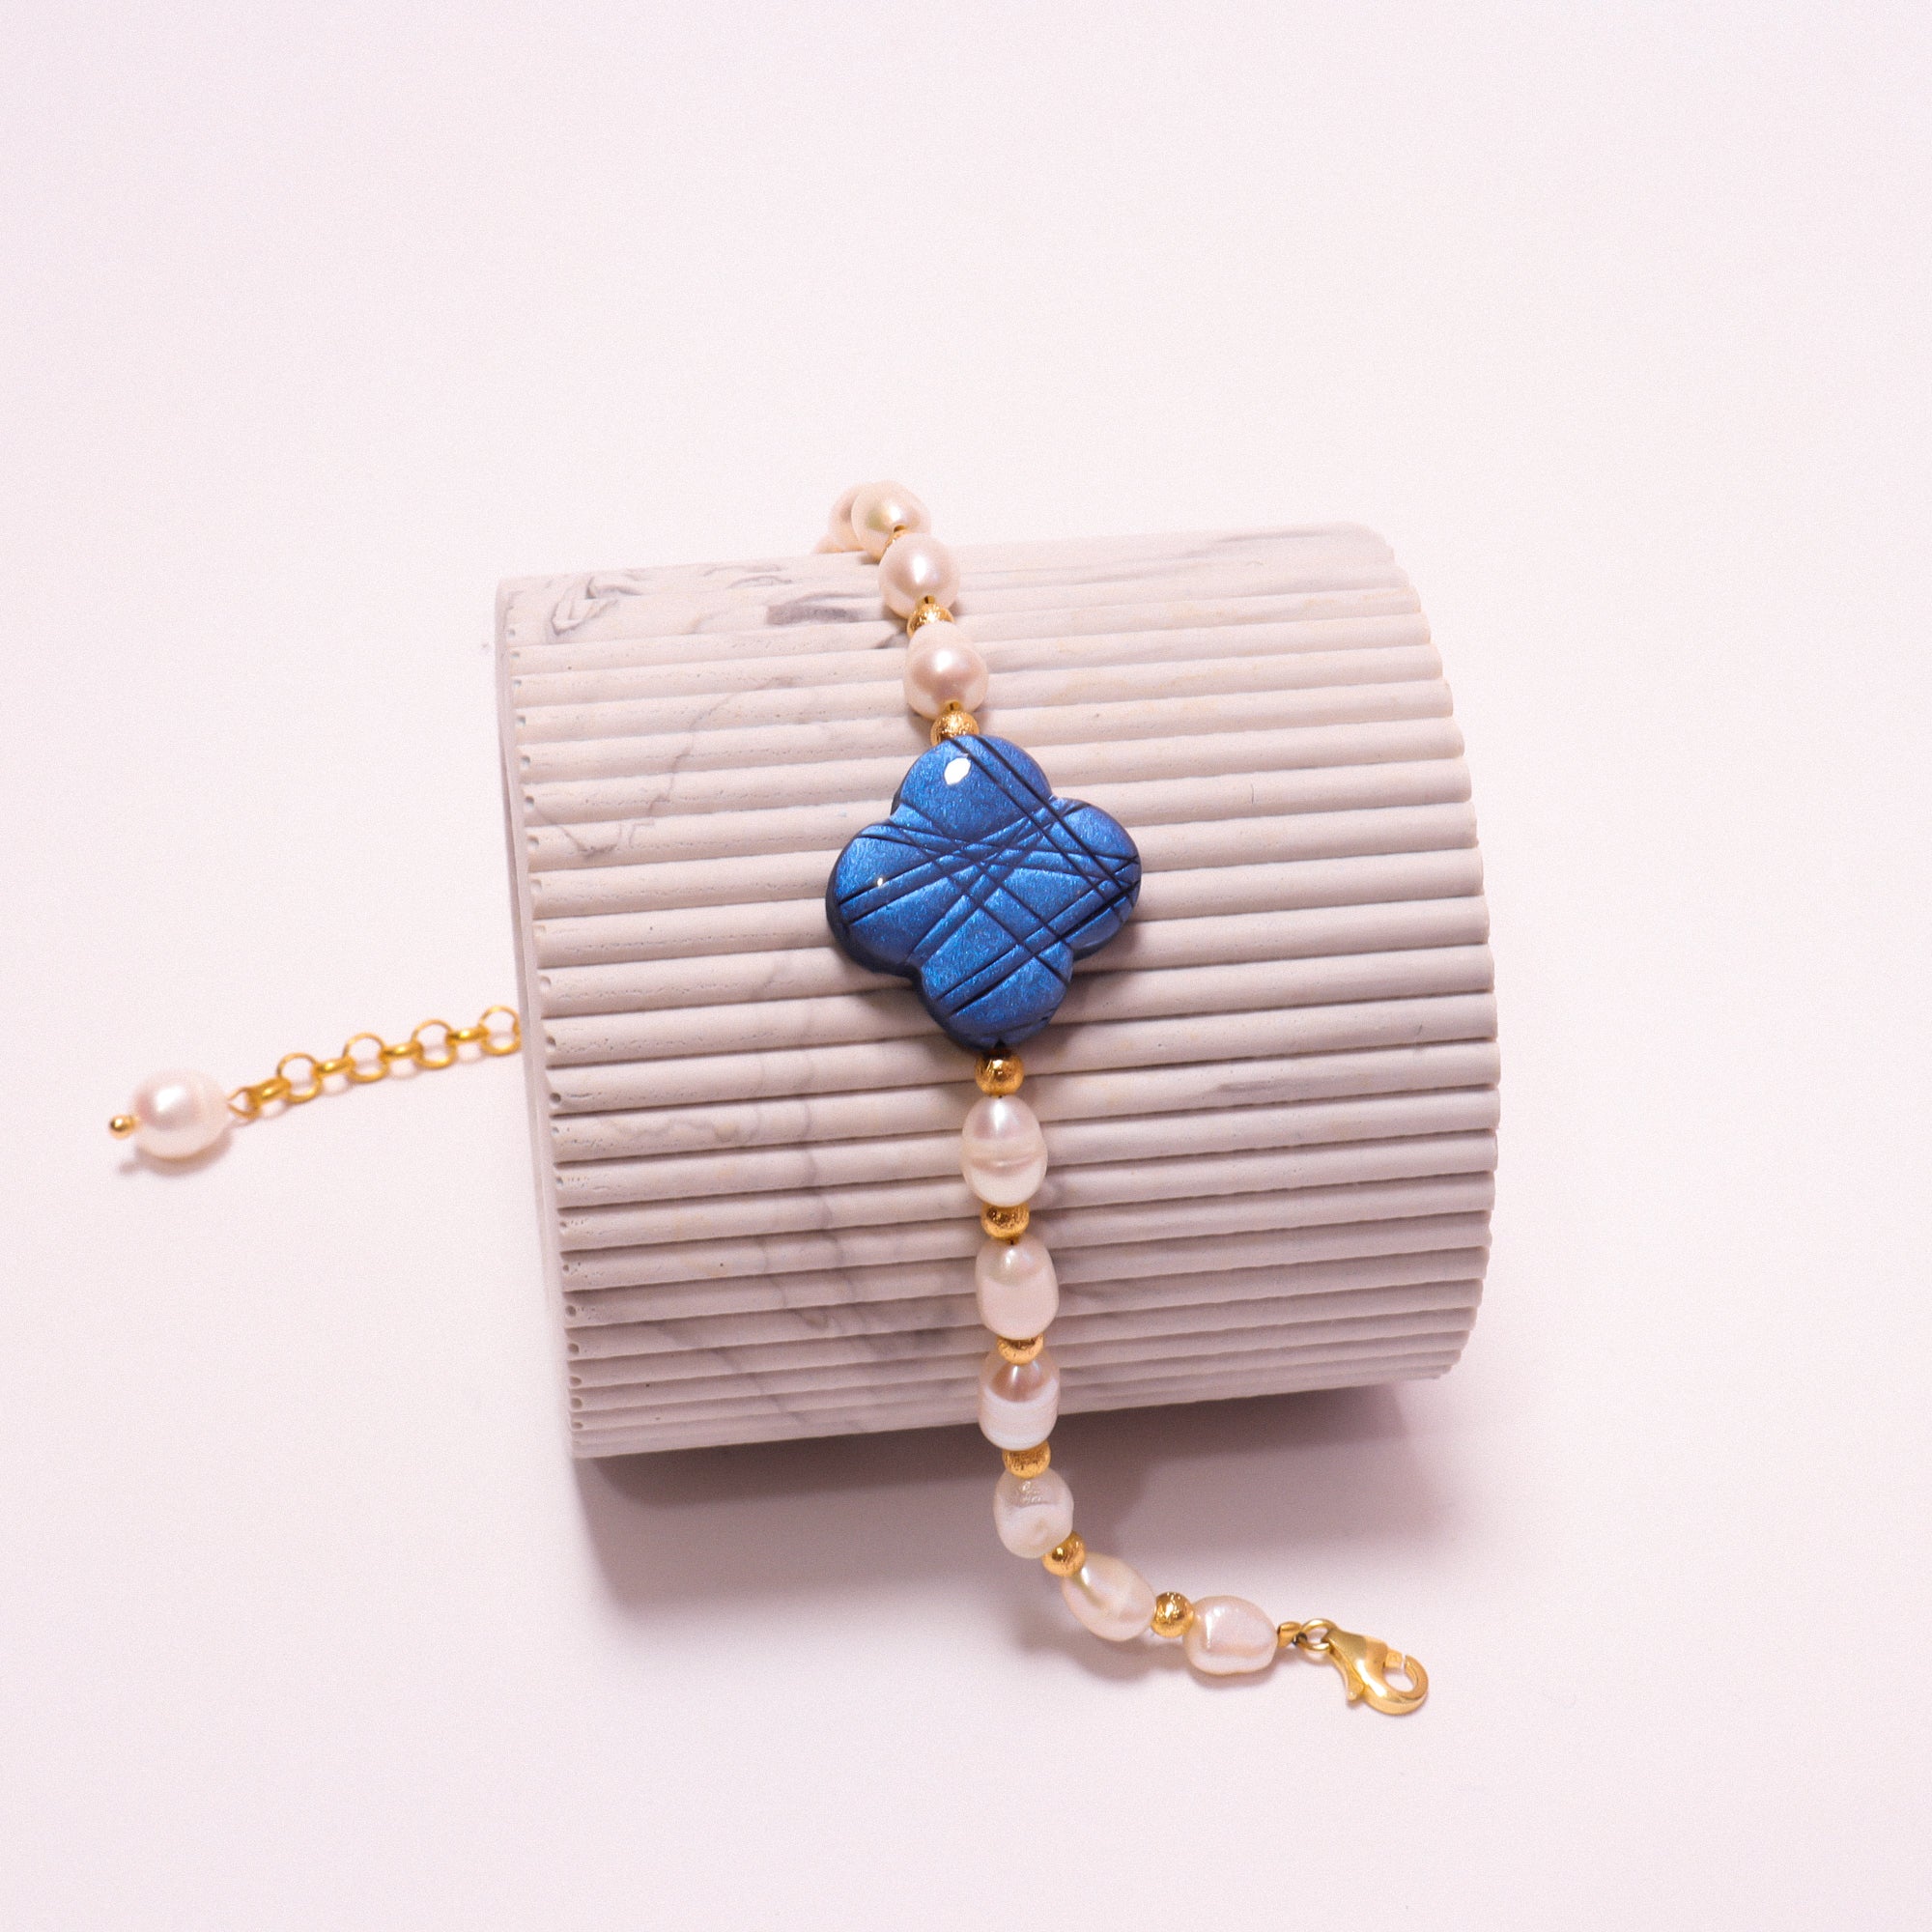 Blue gem bracelet